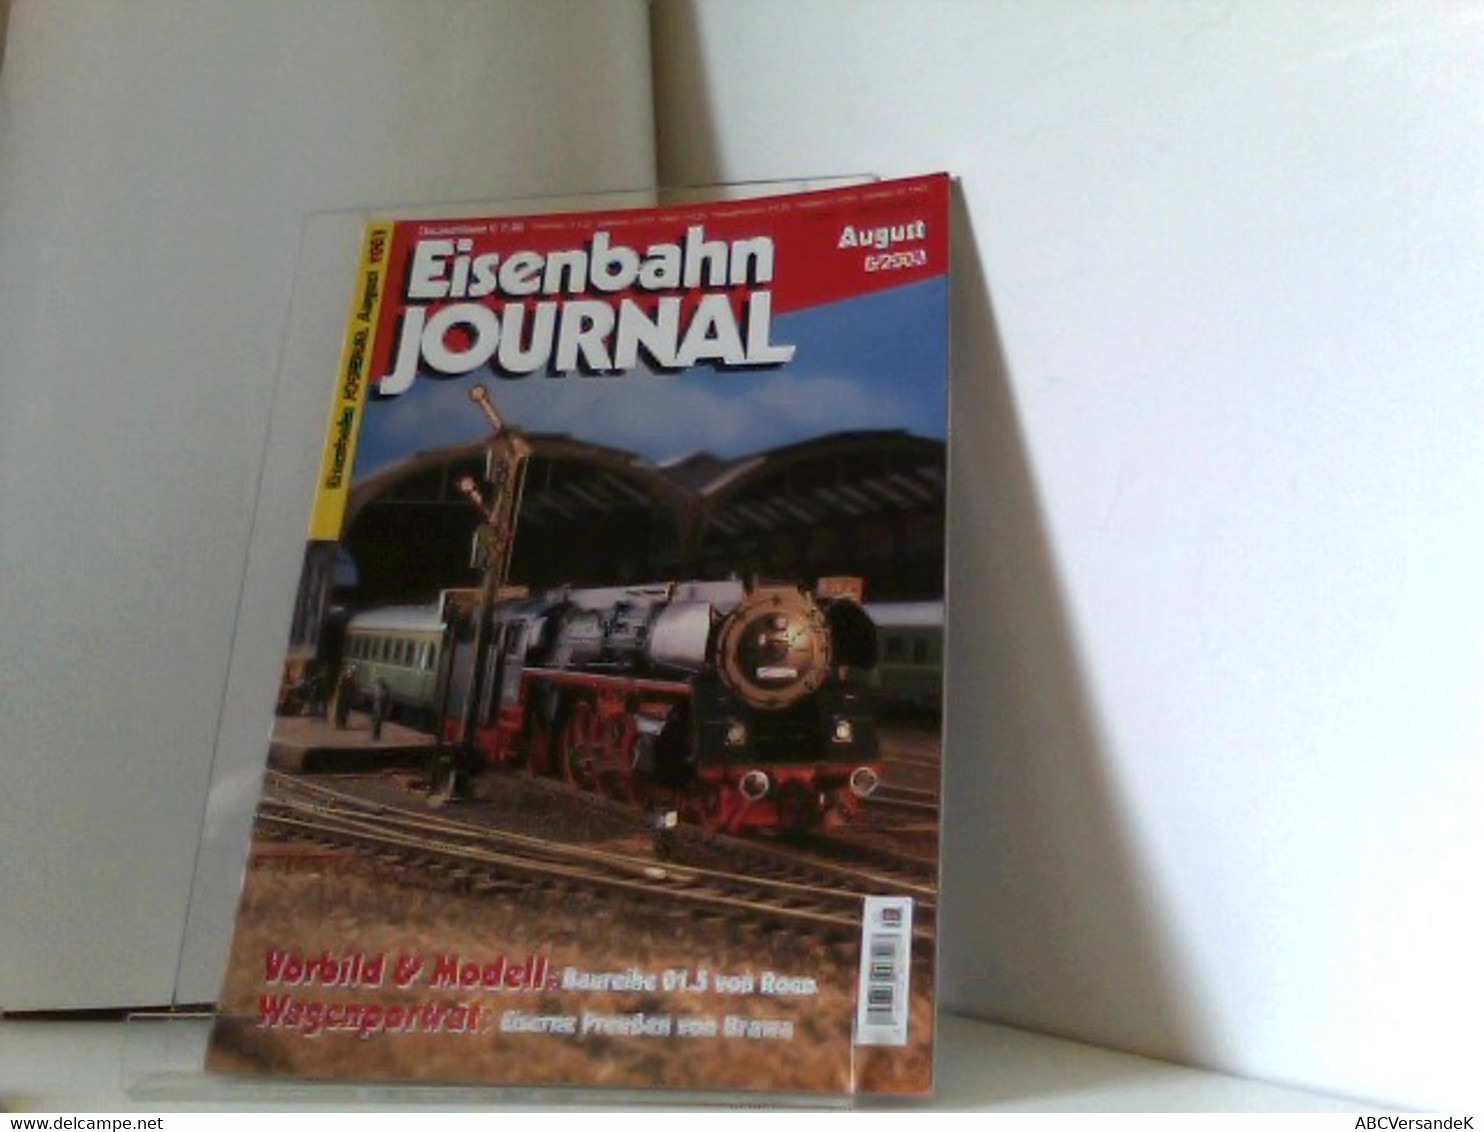 Eisenbahn Journal August 8/2003 - Verkehr